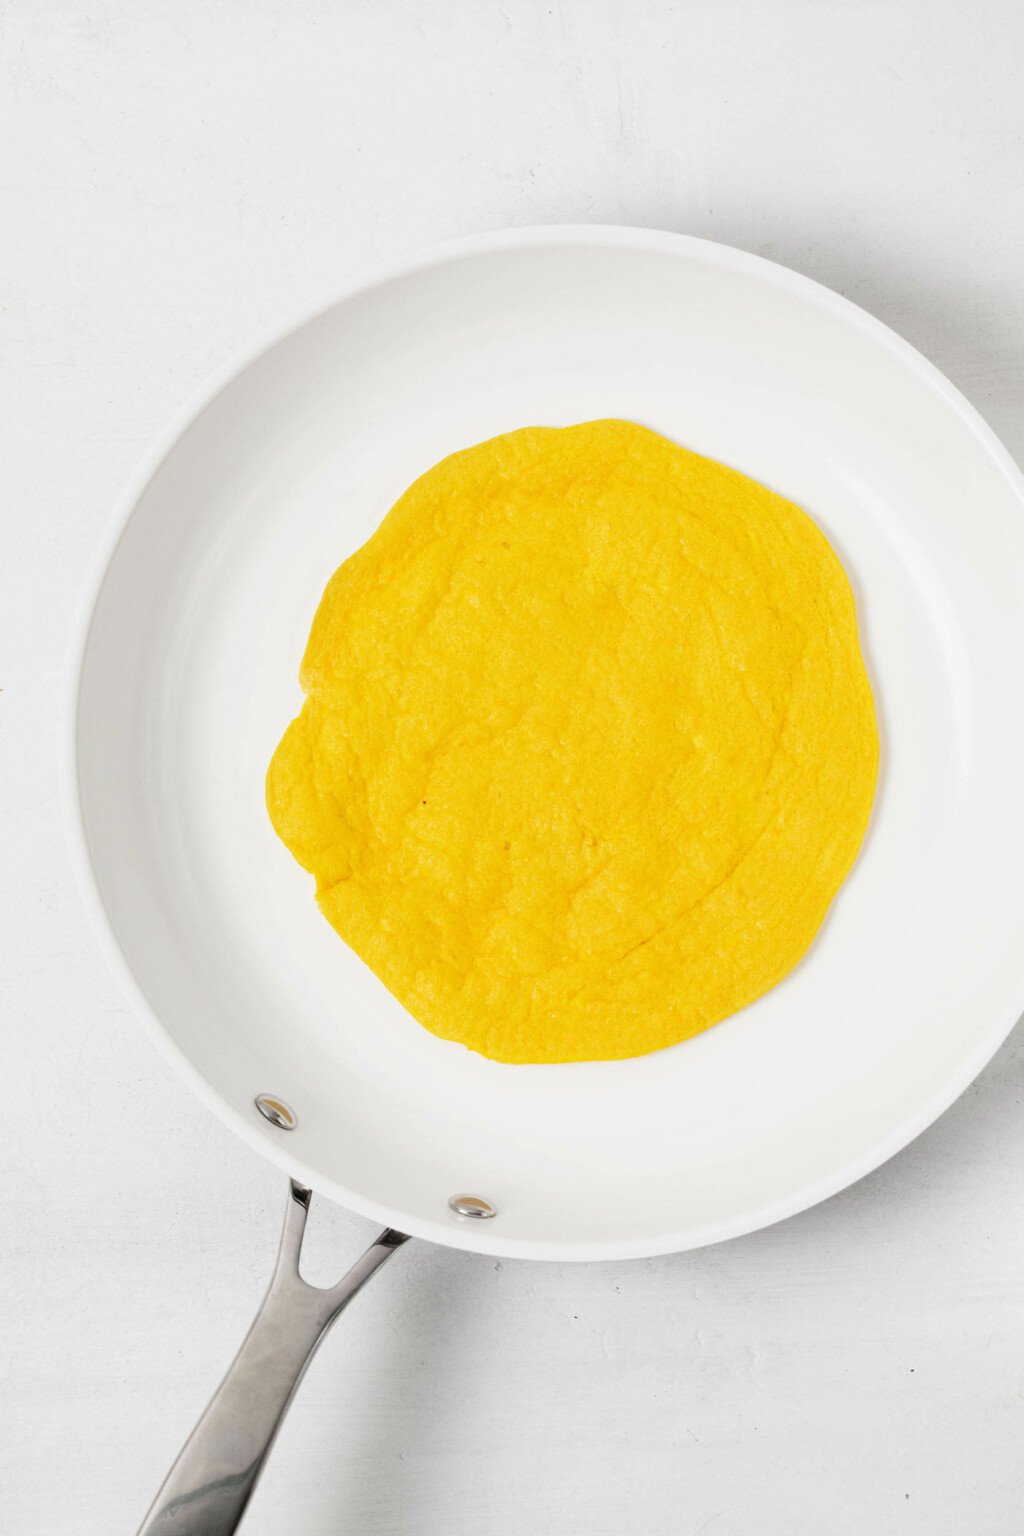 Homemade Vegan Liquid Egg | The Full Helping